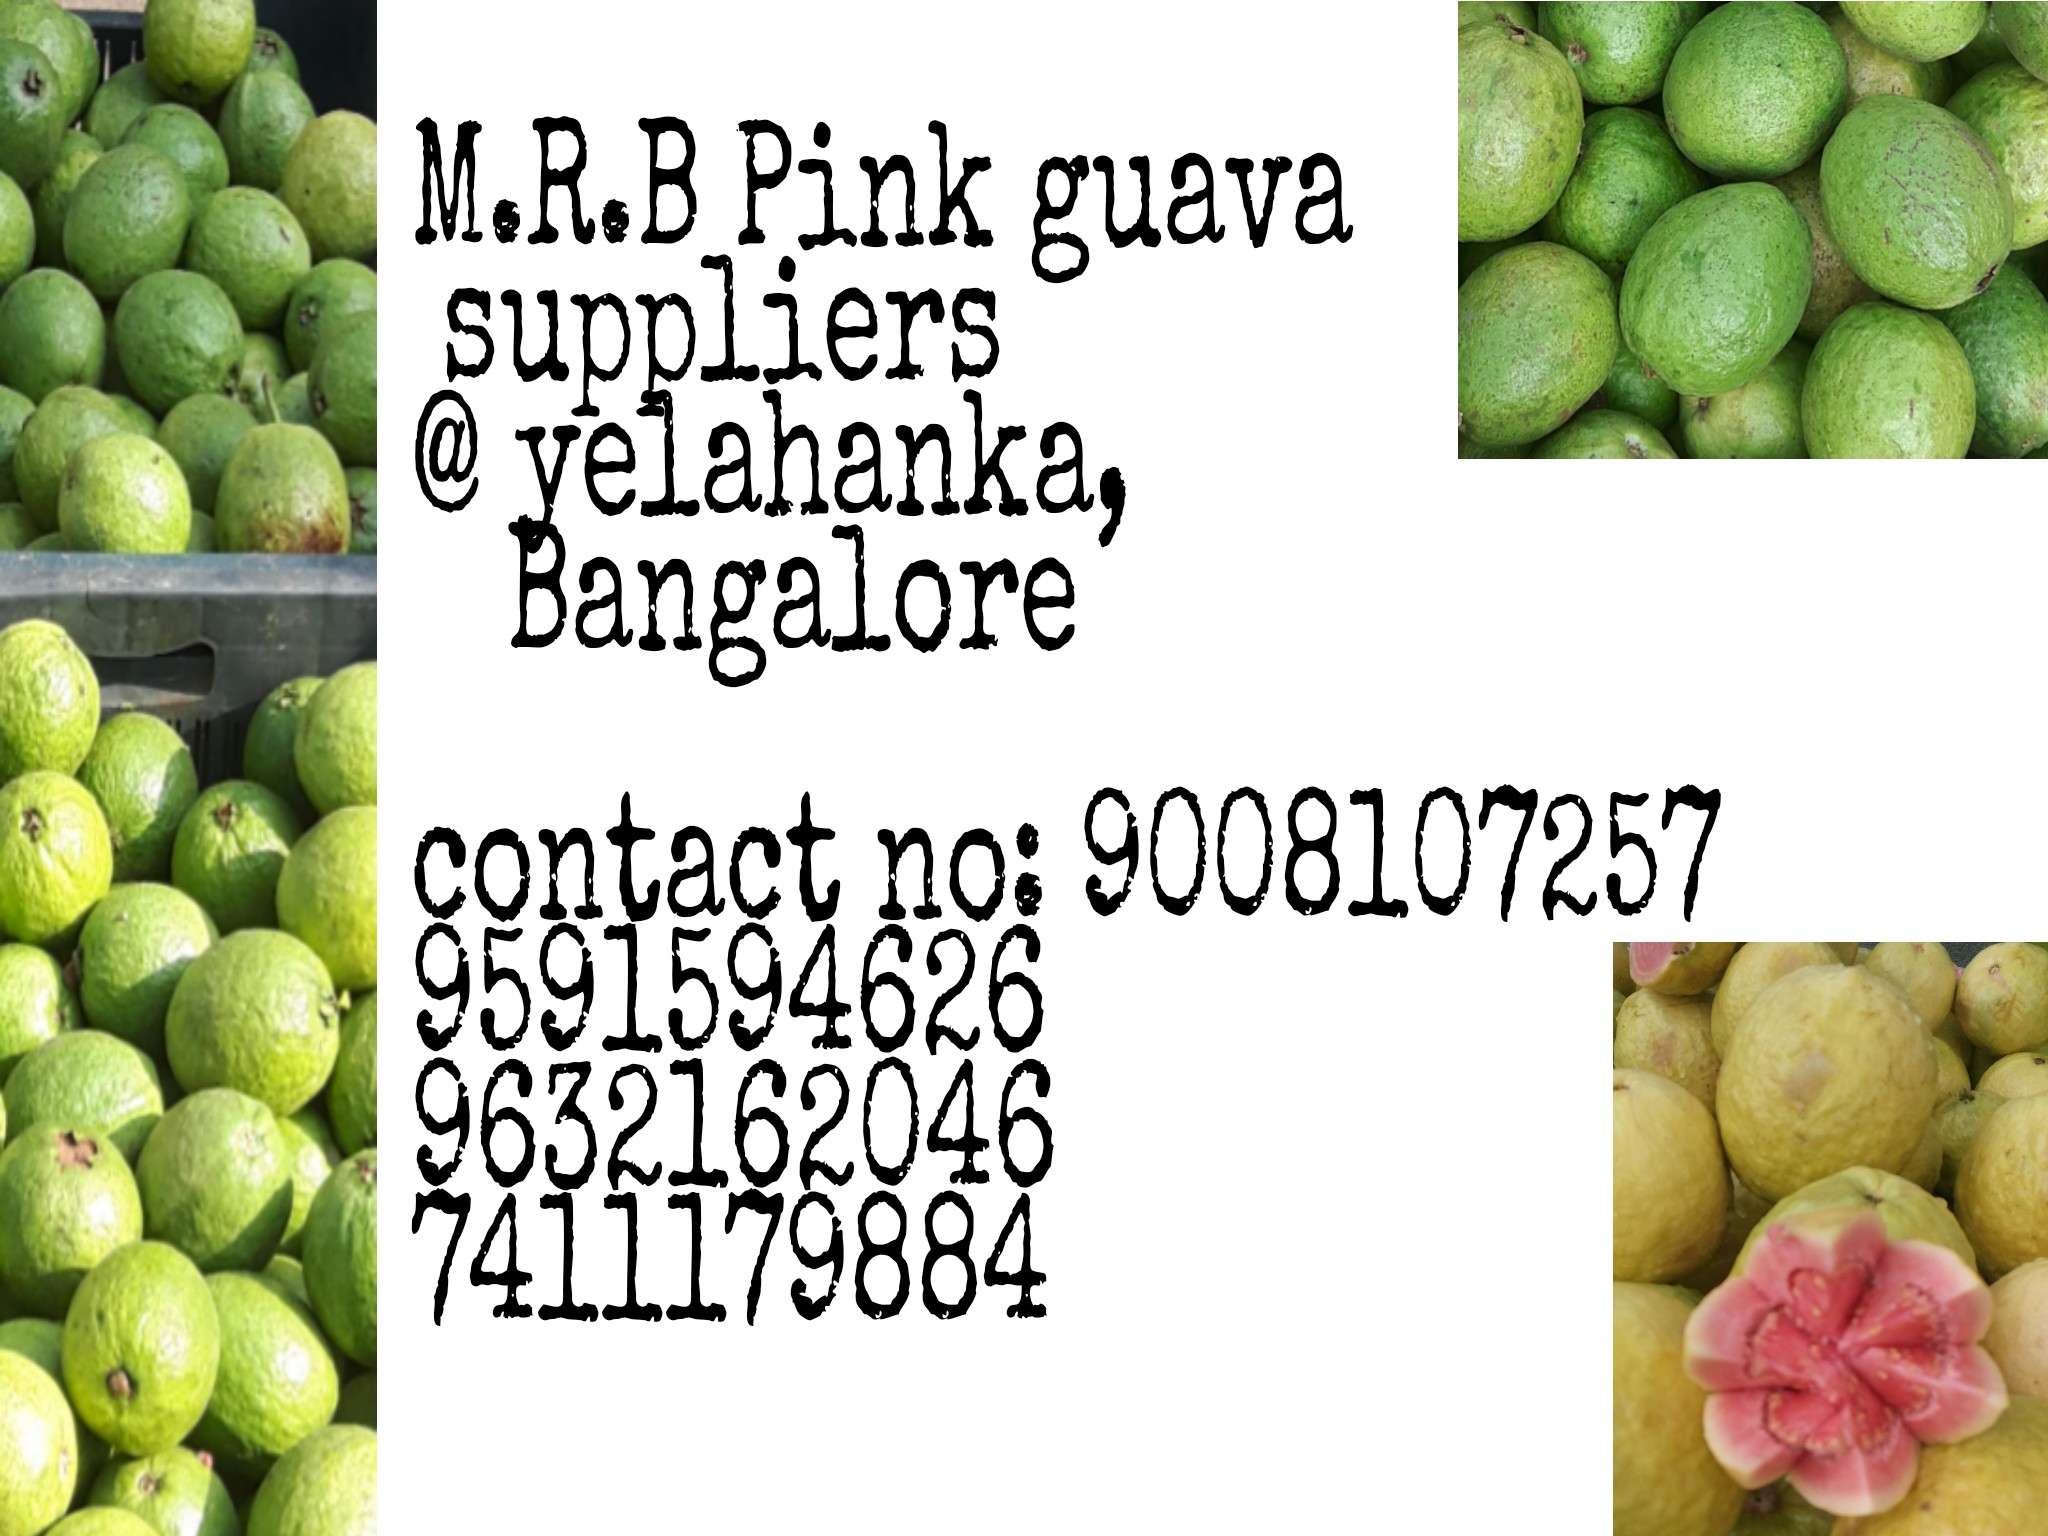 Bmr Pink Guava Supplier